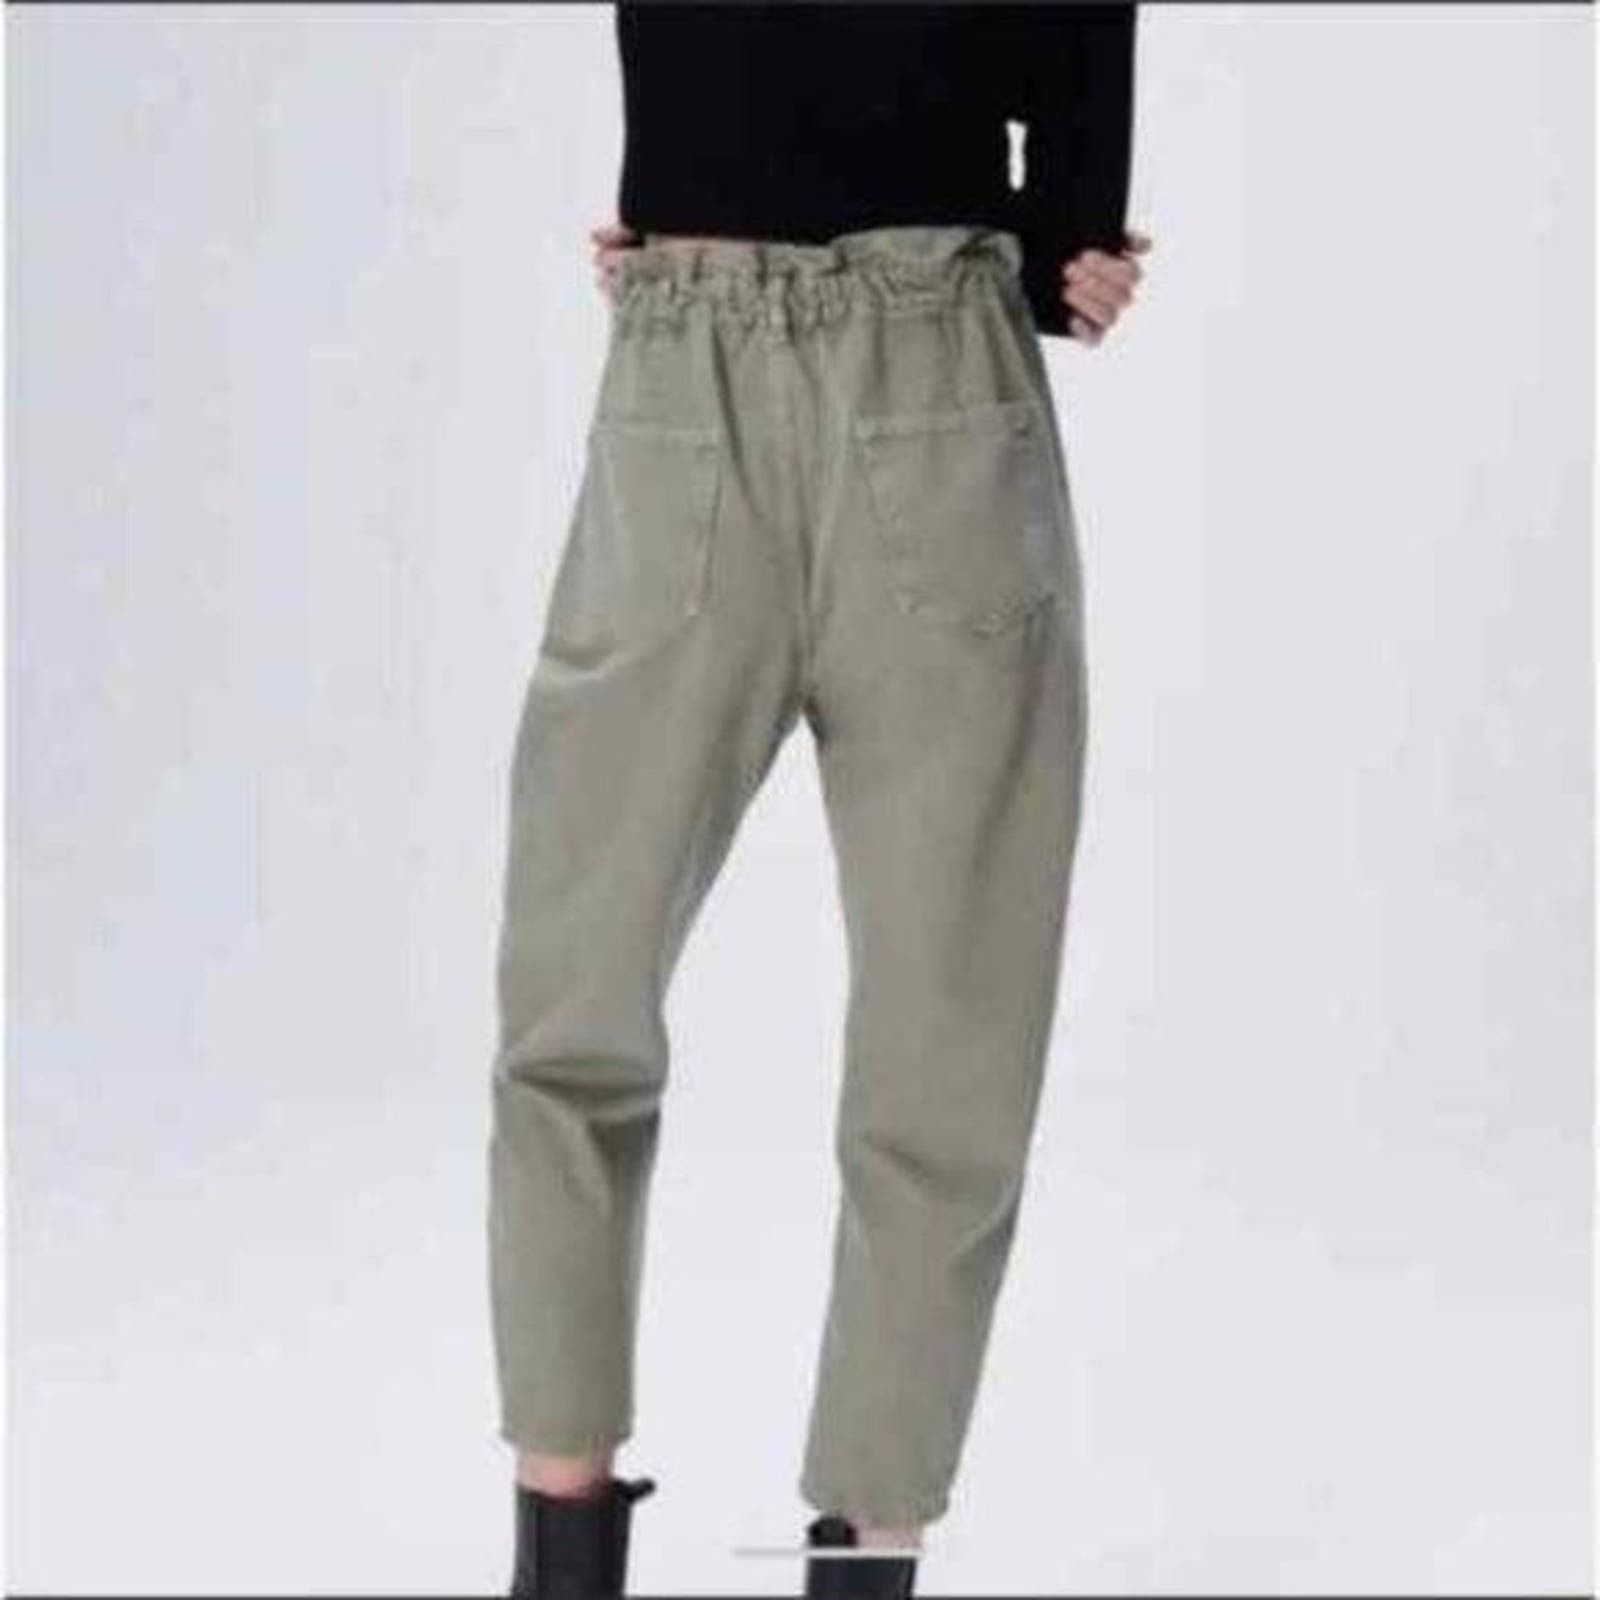 Zara Zara Paper Bag Relaxed Baggy Jeans Pants 29 Khaki Green Size 29" - 4 Thumbnail